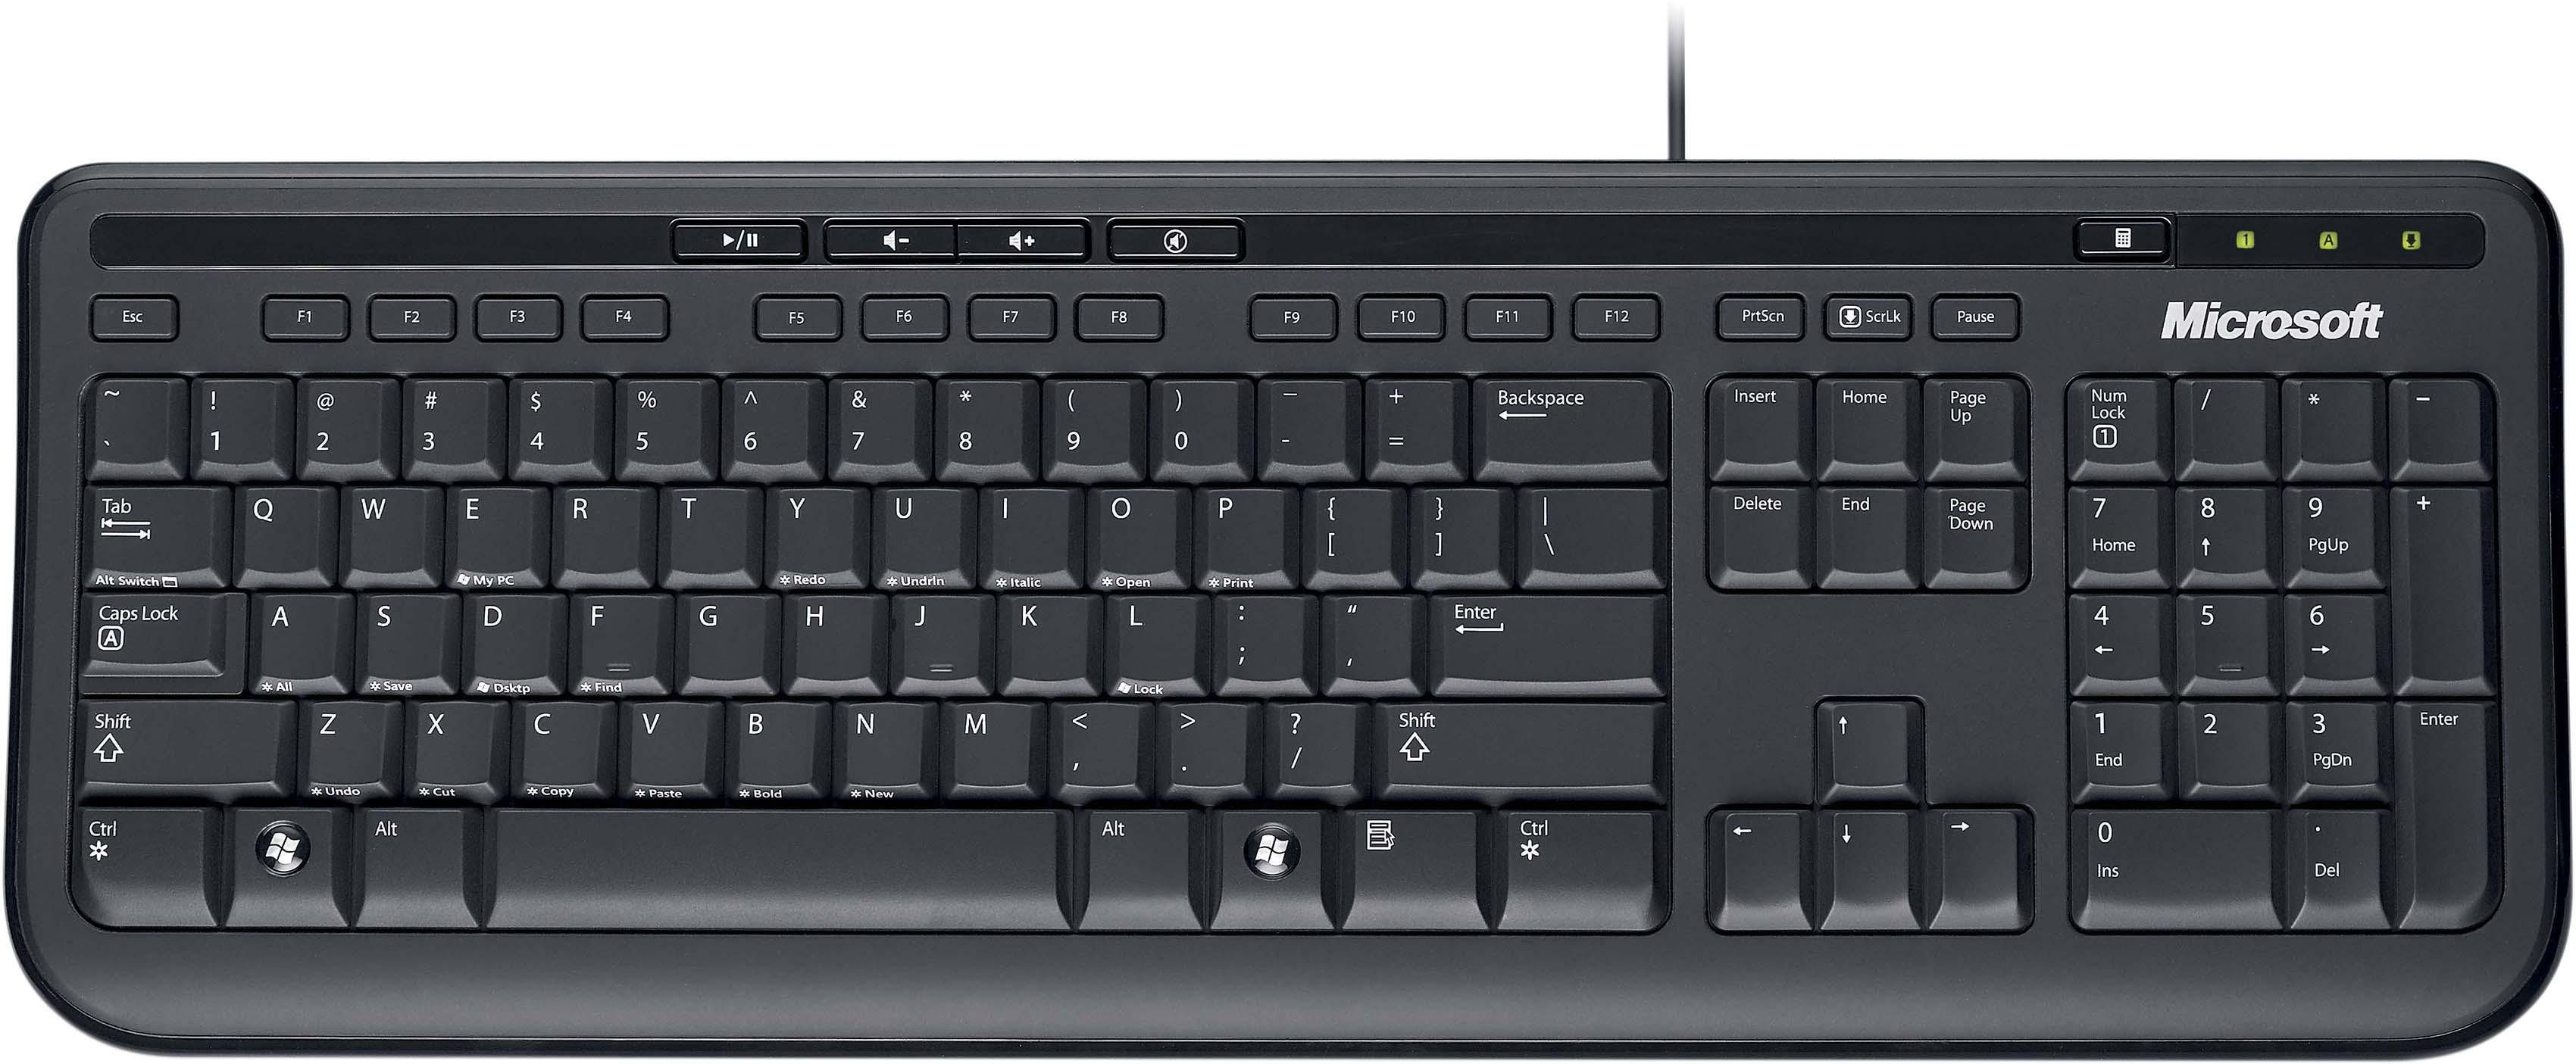 Microsoft Wired Keyboard 600 Tastatur online kaufen | OTTO